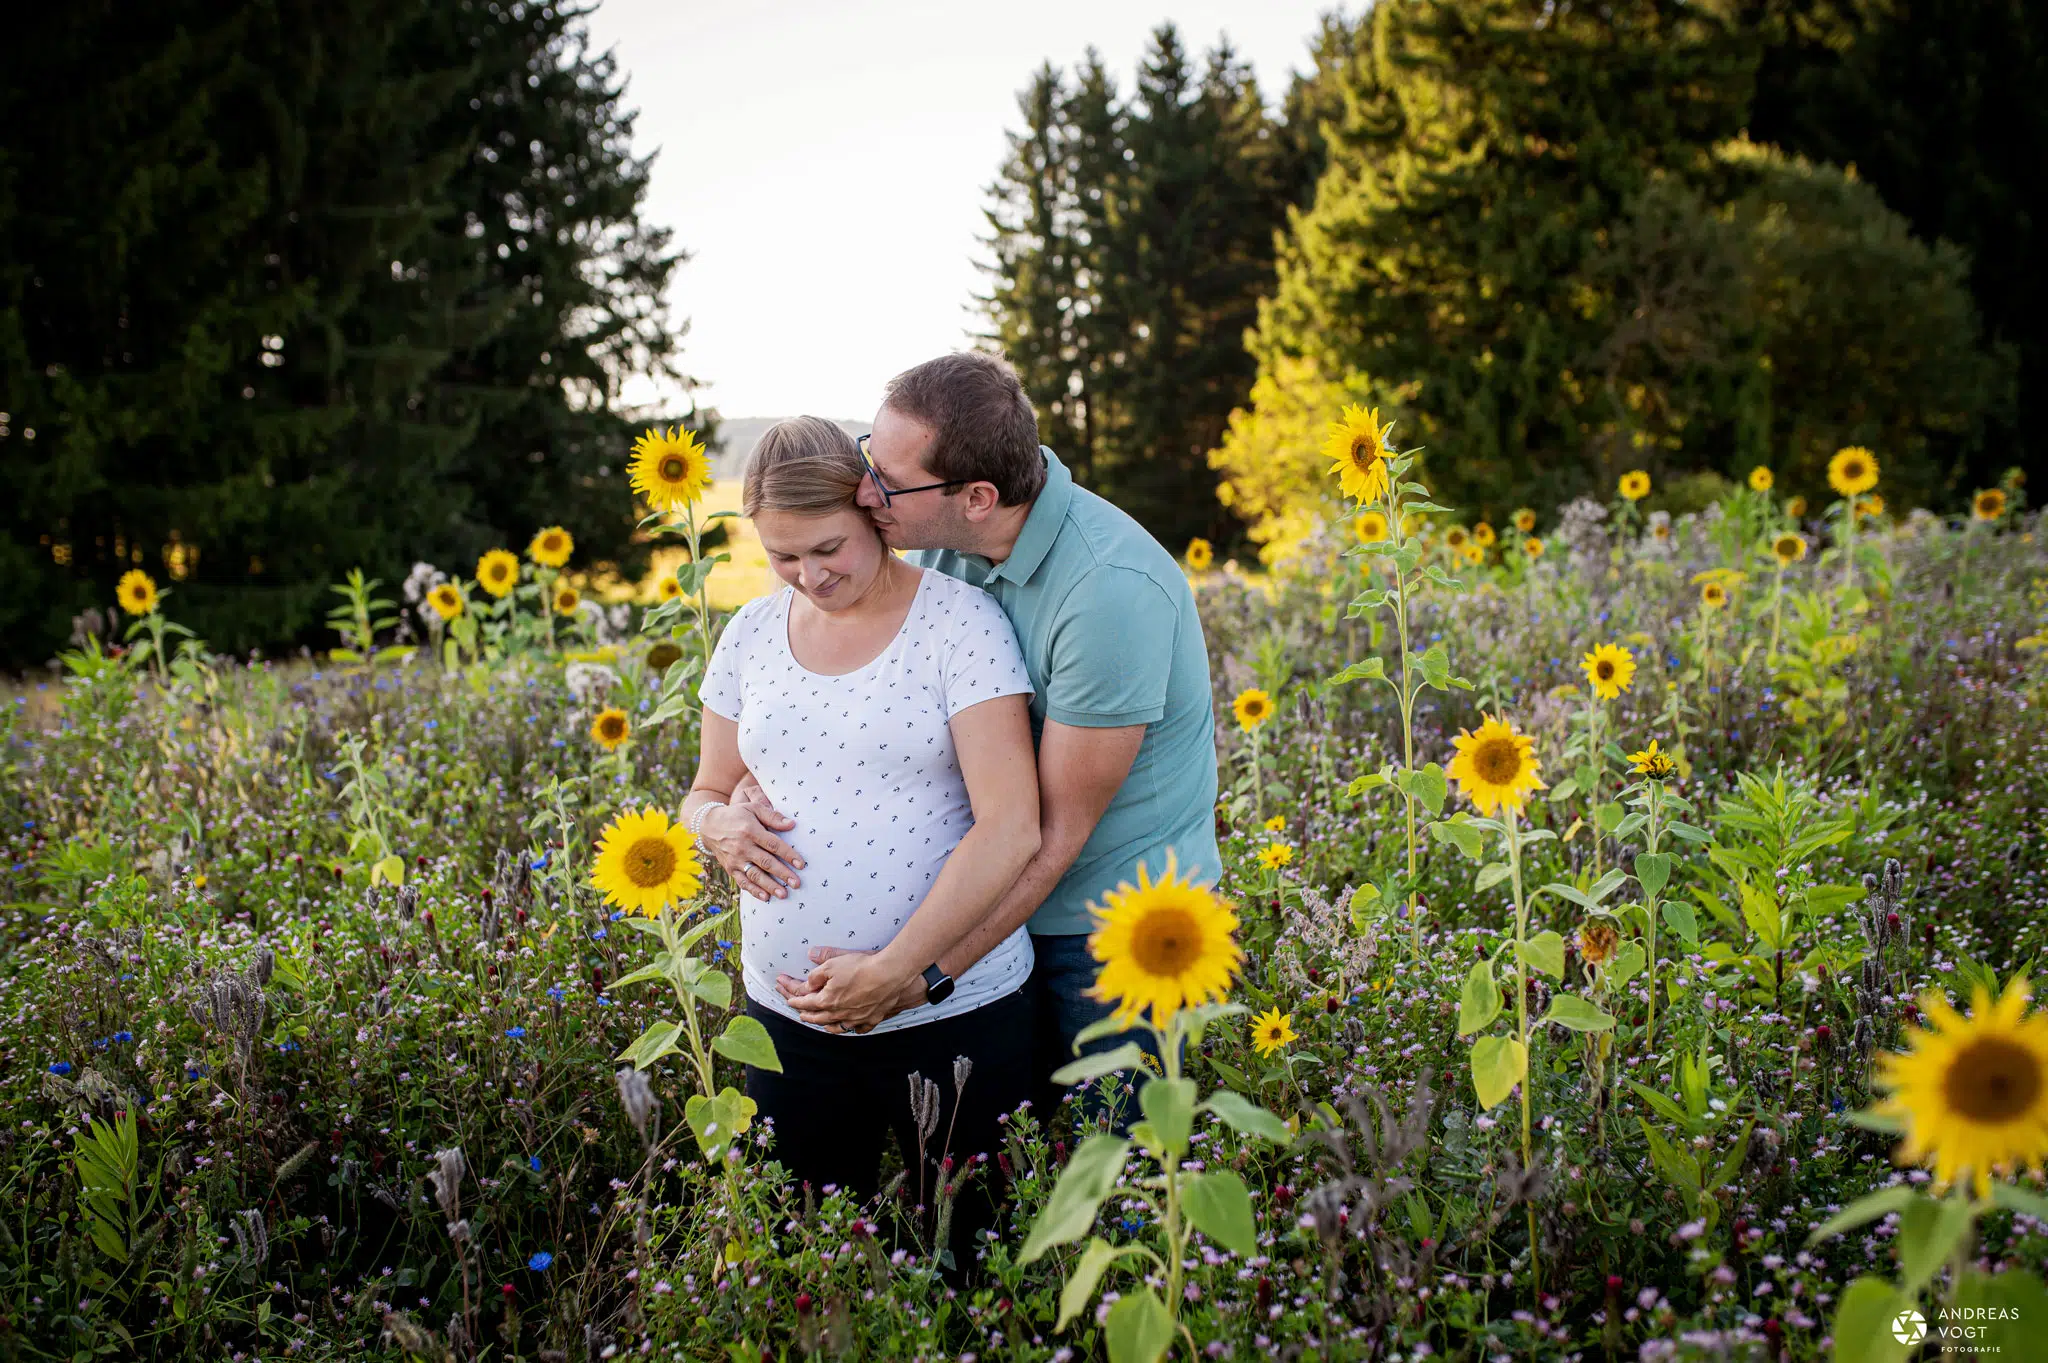 Babybauchfoto mit Partner in einem Sonnenblumenfeld - Fotograf Andreas Vogt aus Aalen